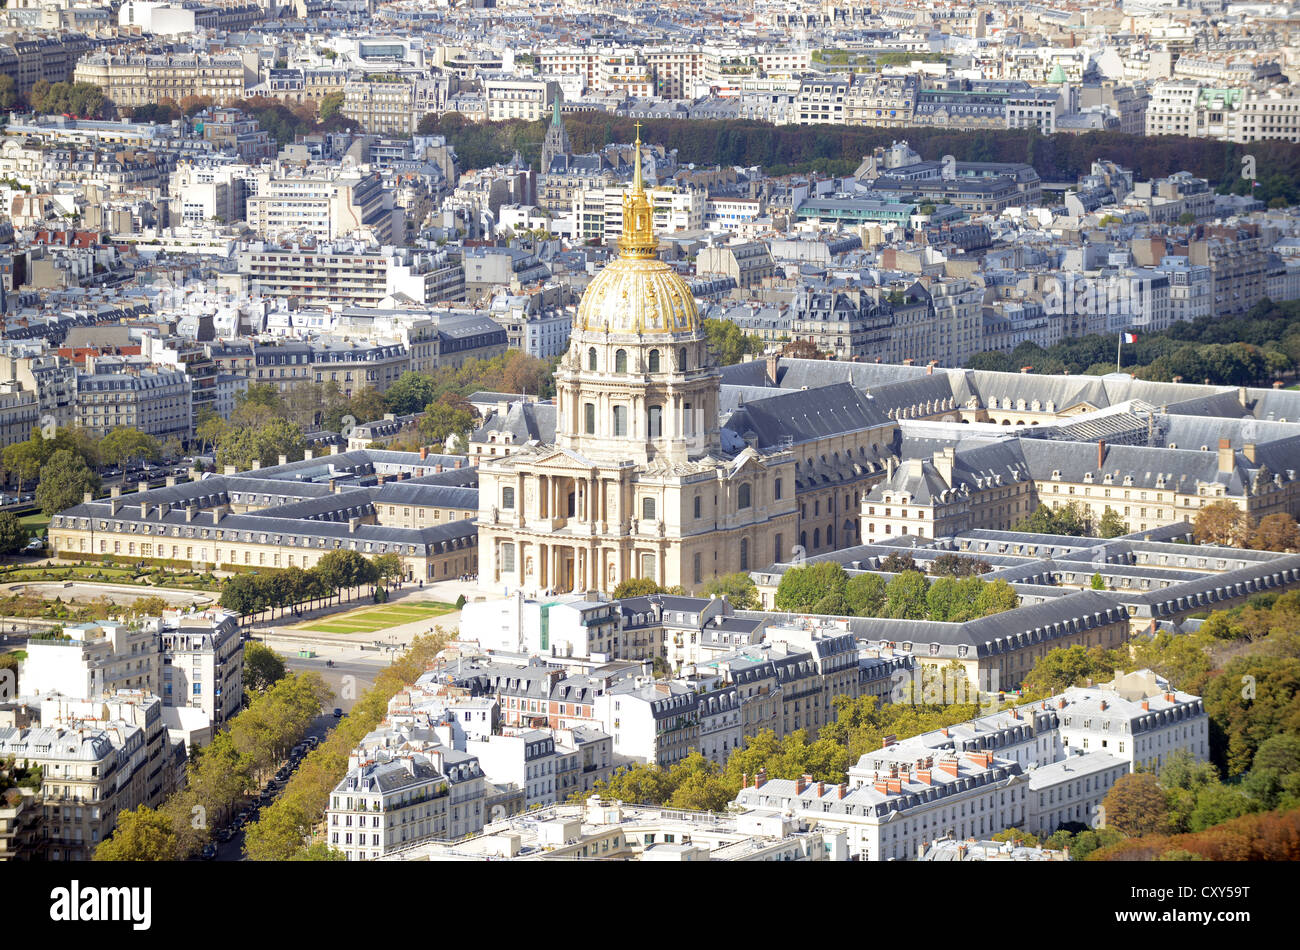 Les Invalides, Parigi, Francia. Cupola dorata cattedrale della chiesa a 'Les Invalides" Parigi, Francia Foto Stock